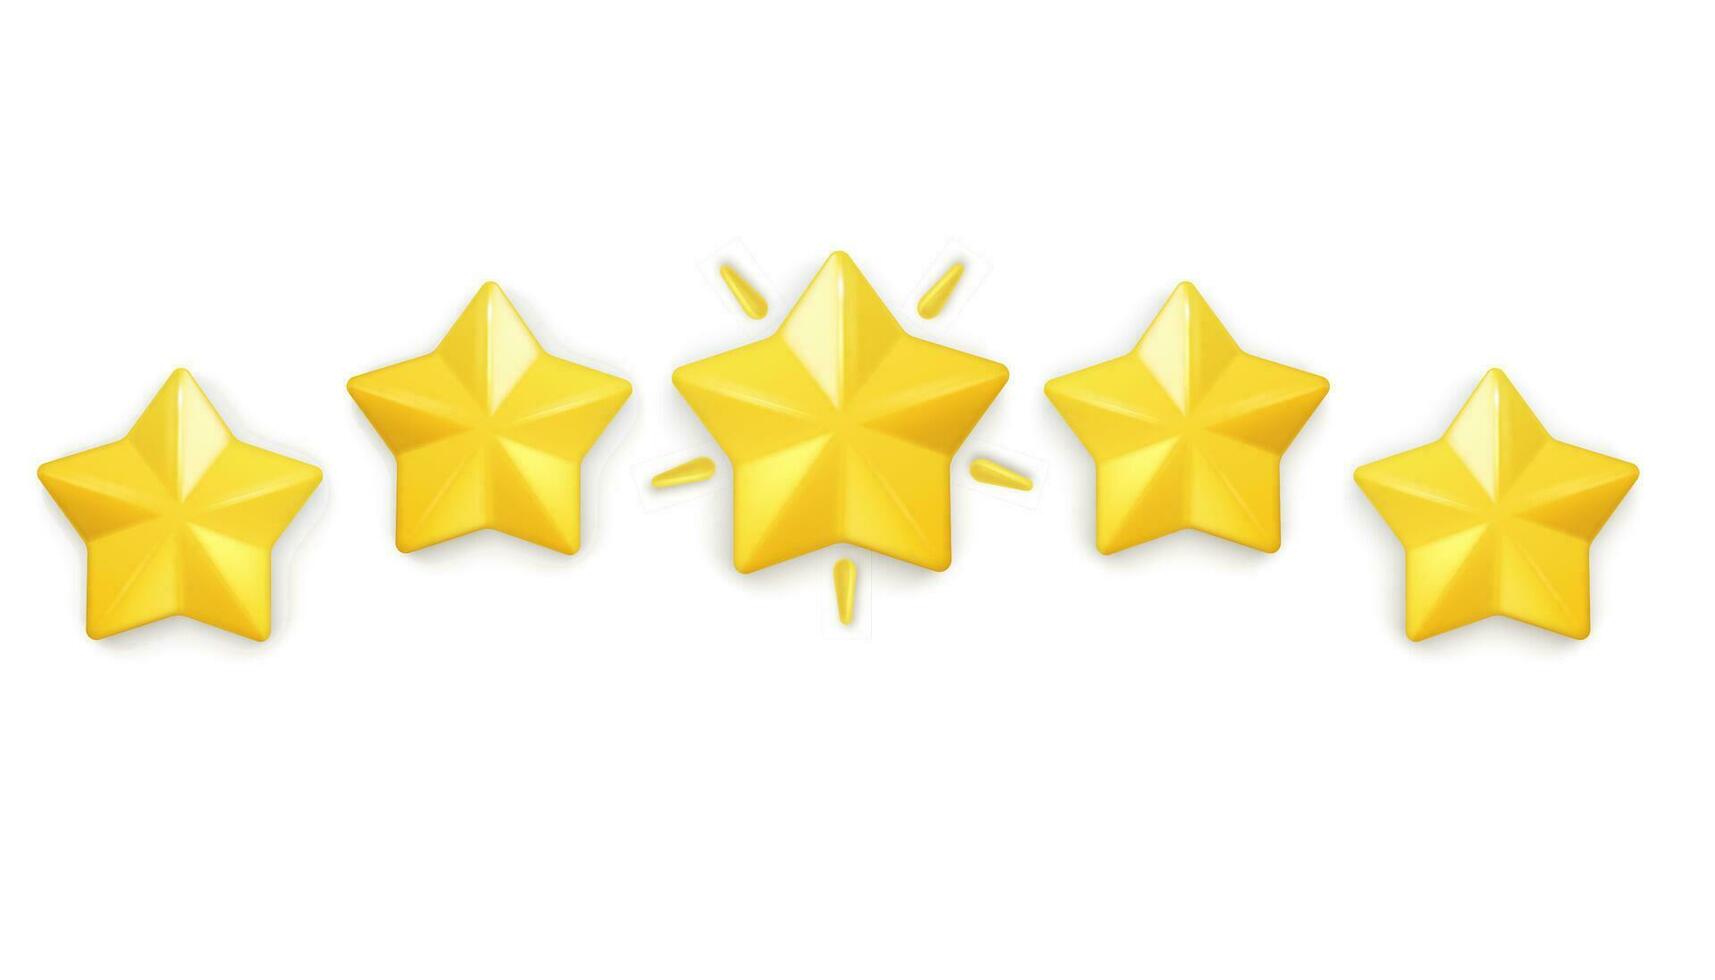 cinco lustroso amarillo estrellas simbolizar juego de azar logros, reflejando cliente realimentación en sitio web empleados. realista 3d diseño a la medida para móvil aplicaciones vector ilustración